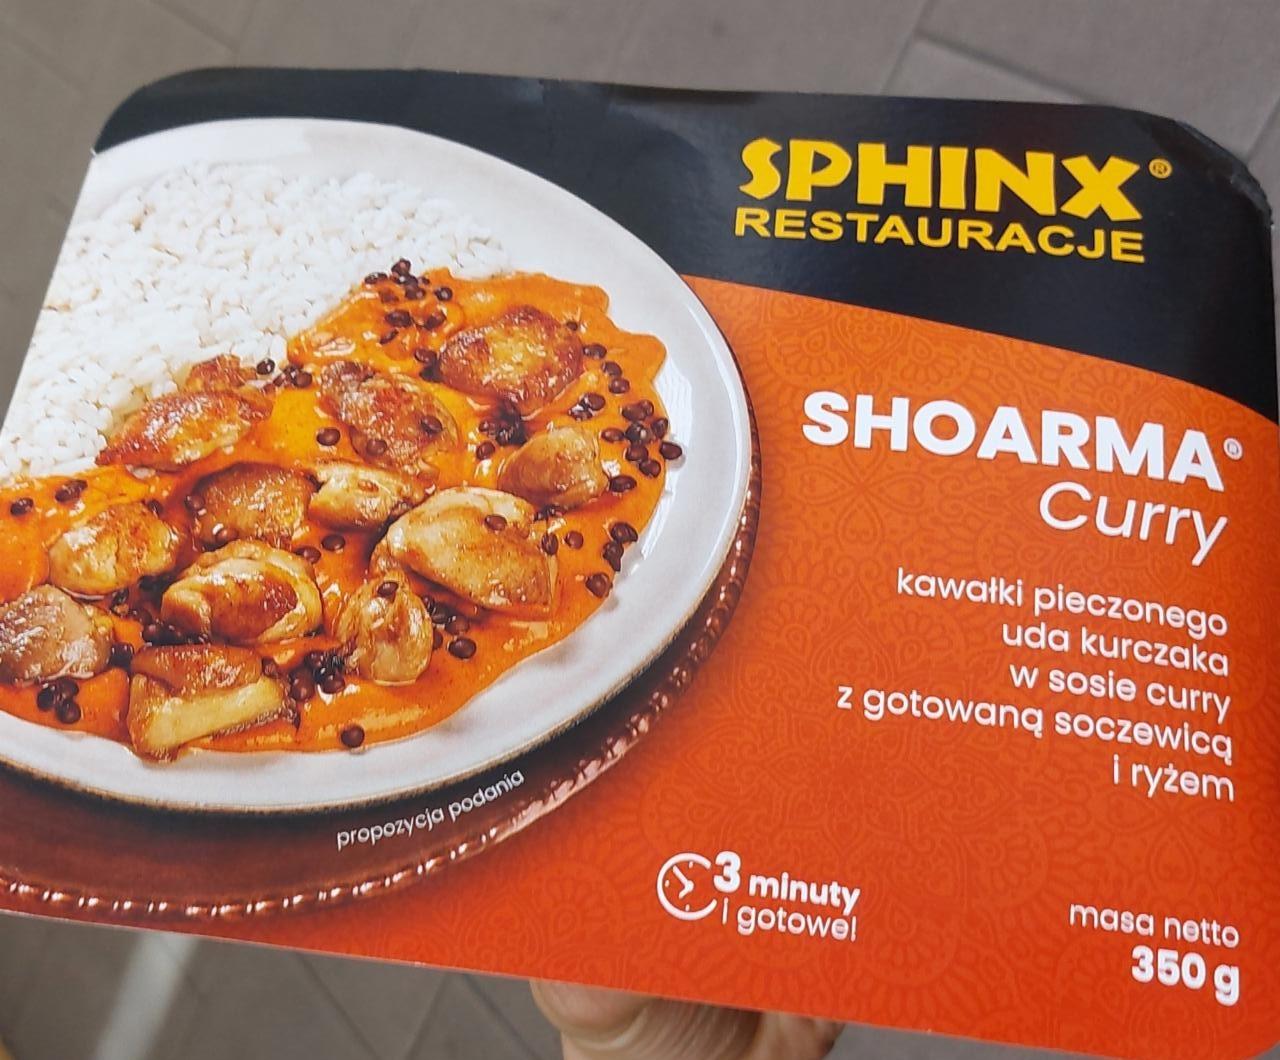 Zdjęcia - Shoarma Curry Sphinx Restauracje